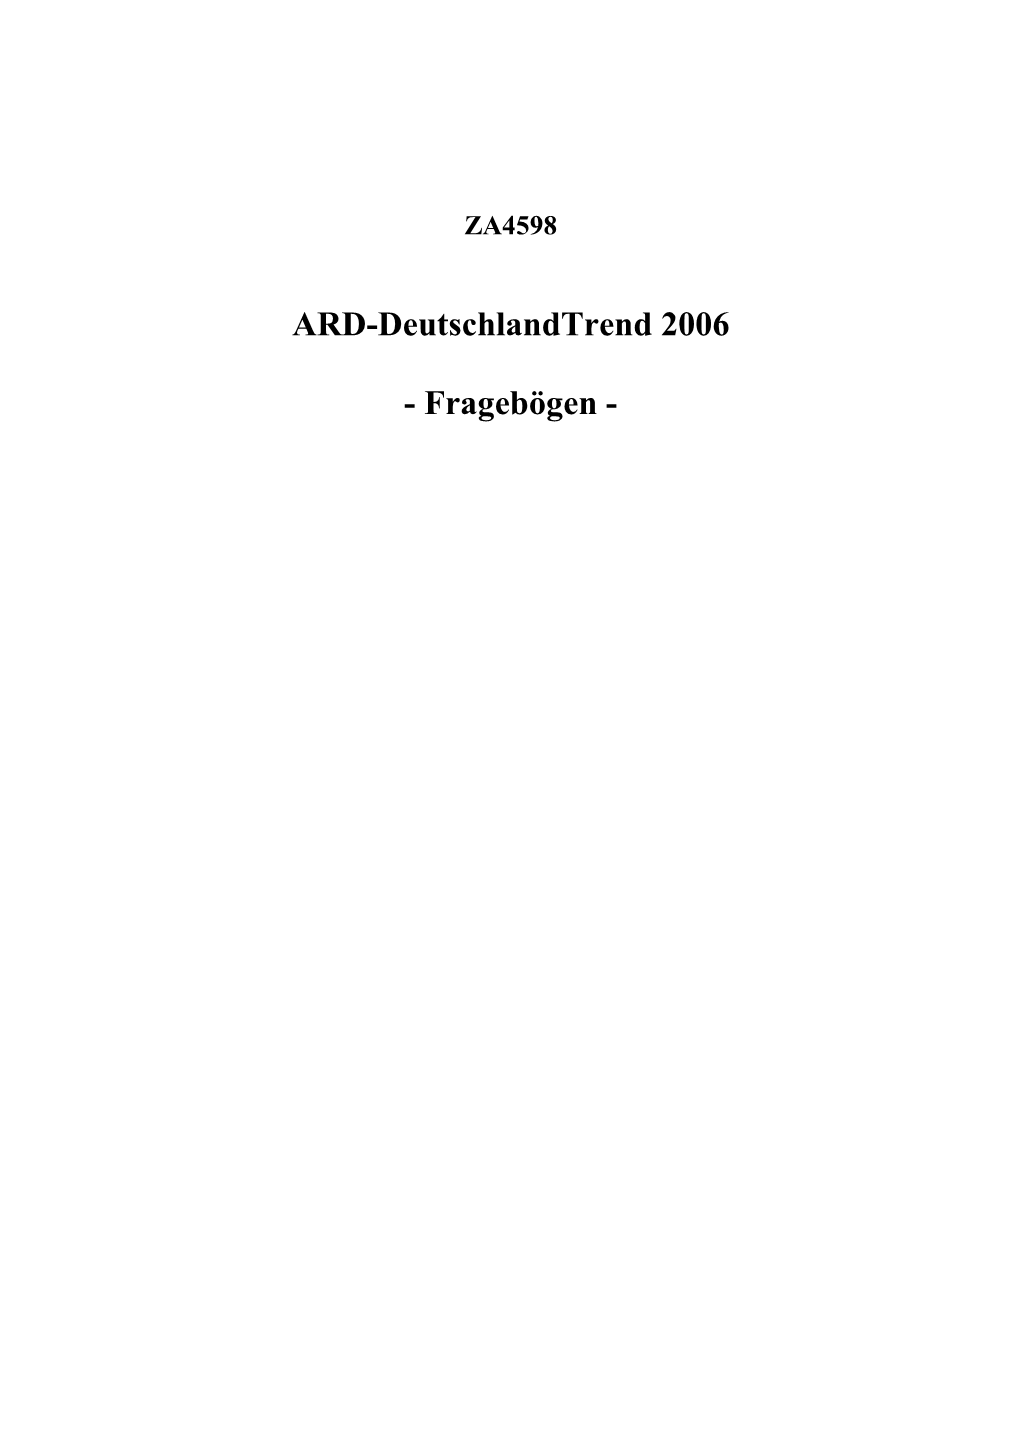 ARD-Deutschlandtrend 2006